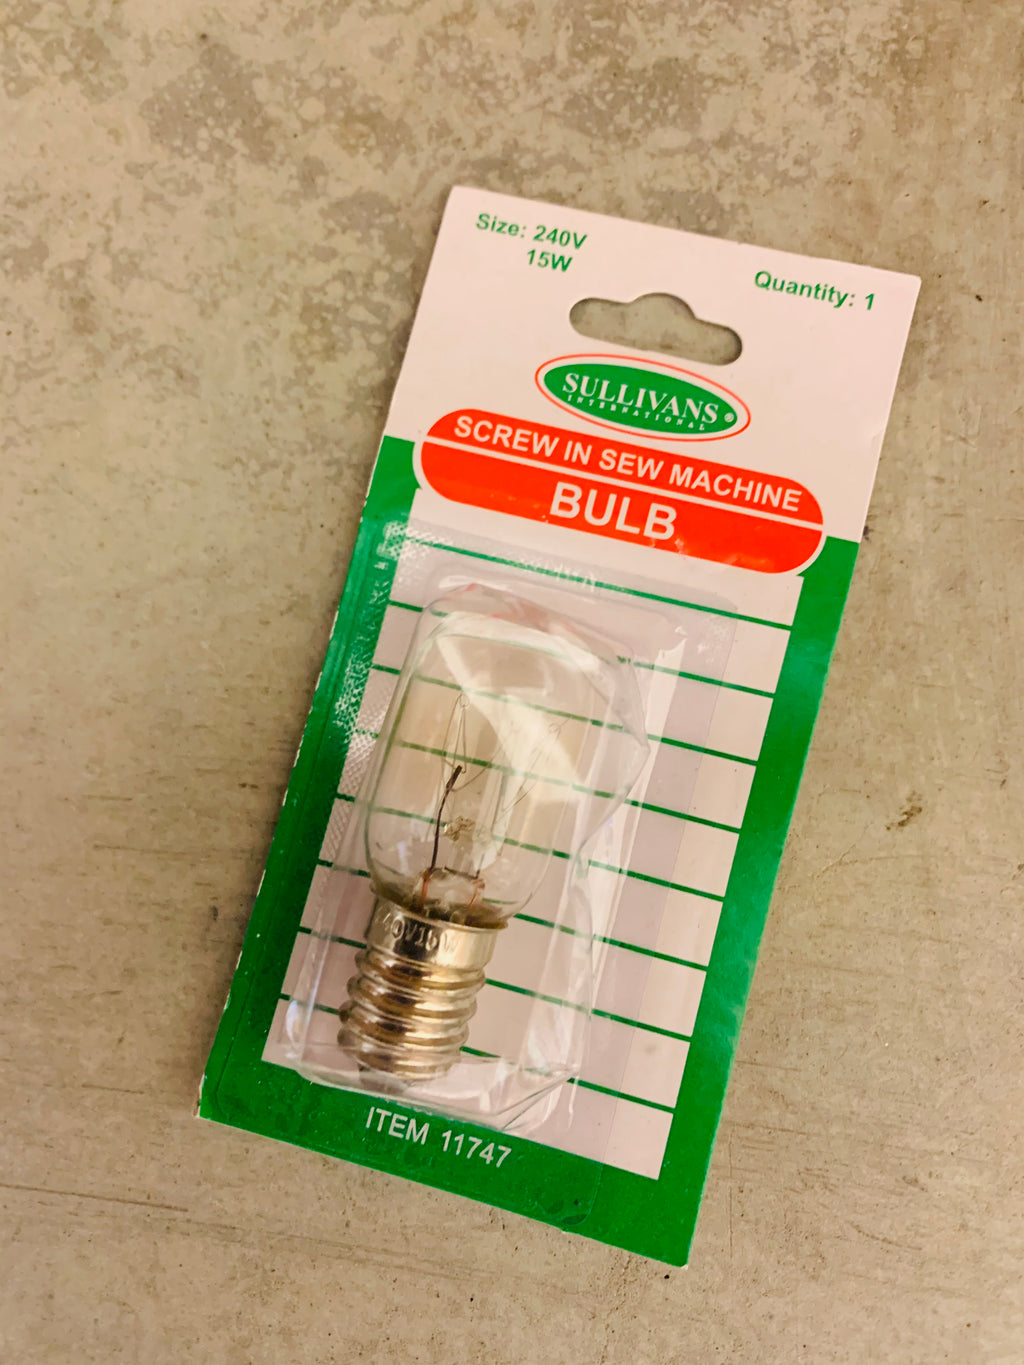 Sullivans sewing machine bulb: Screw in